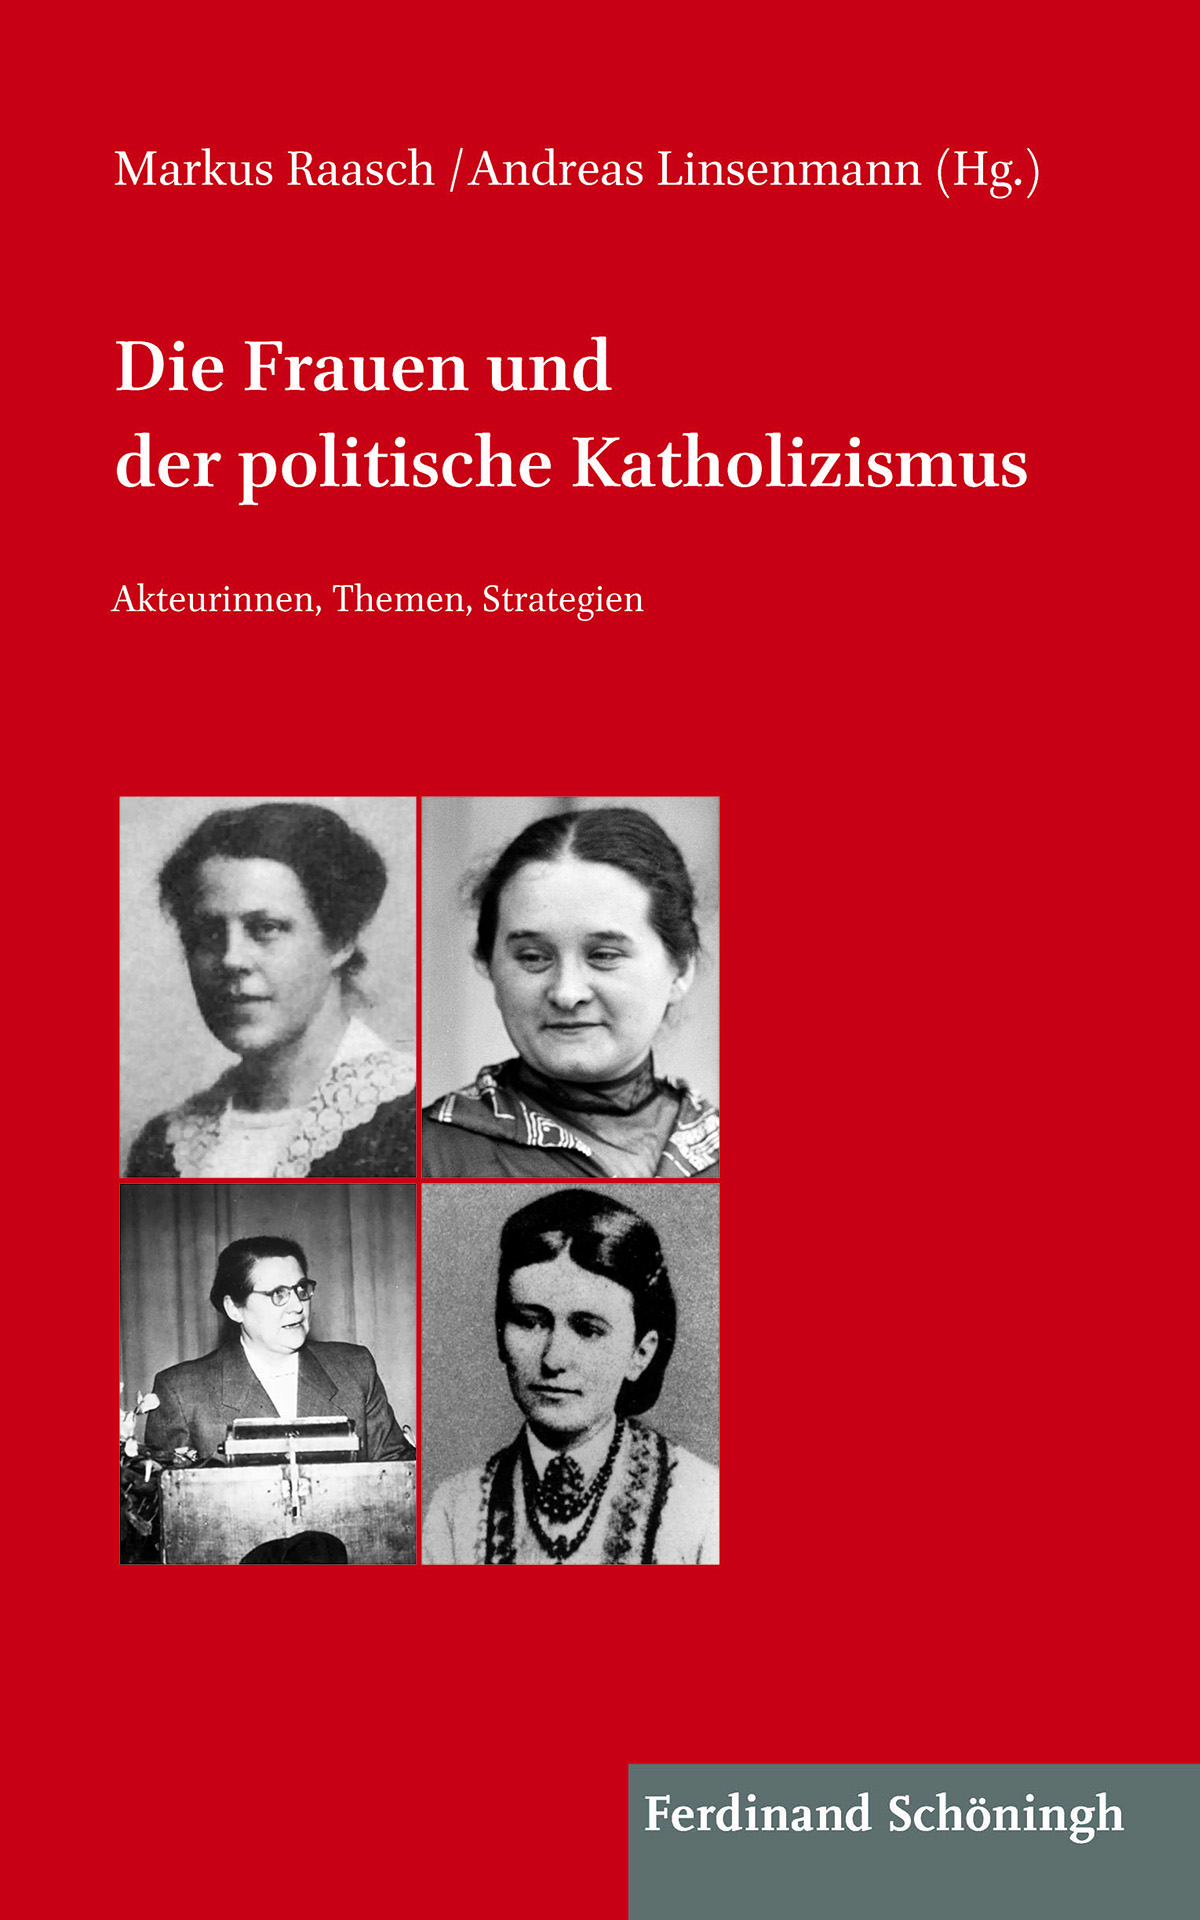 Markus Raasch / Andreas Linsenmann (Hg.): Die Frauen und der politische Katholizismus. Akteurinnen, Themen, Strategien.